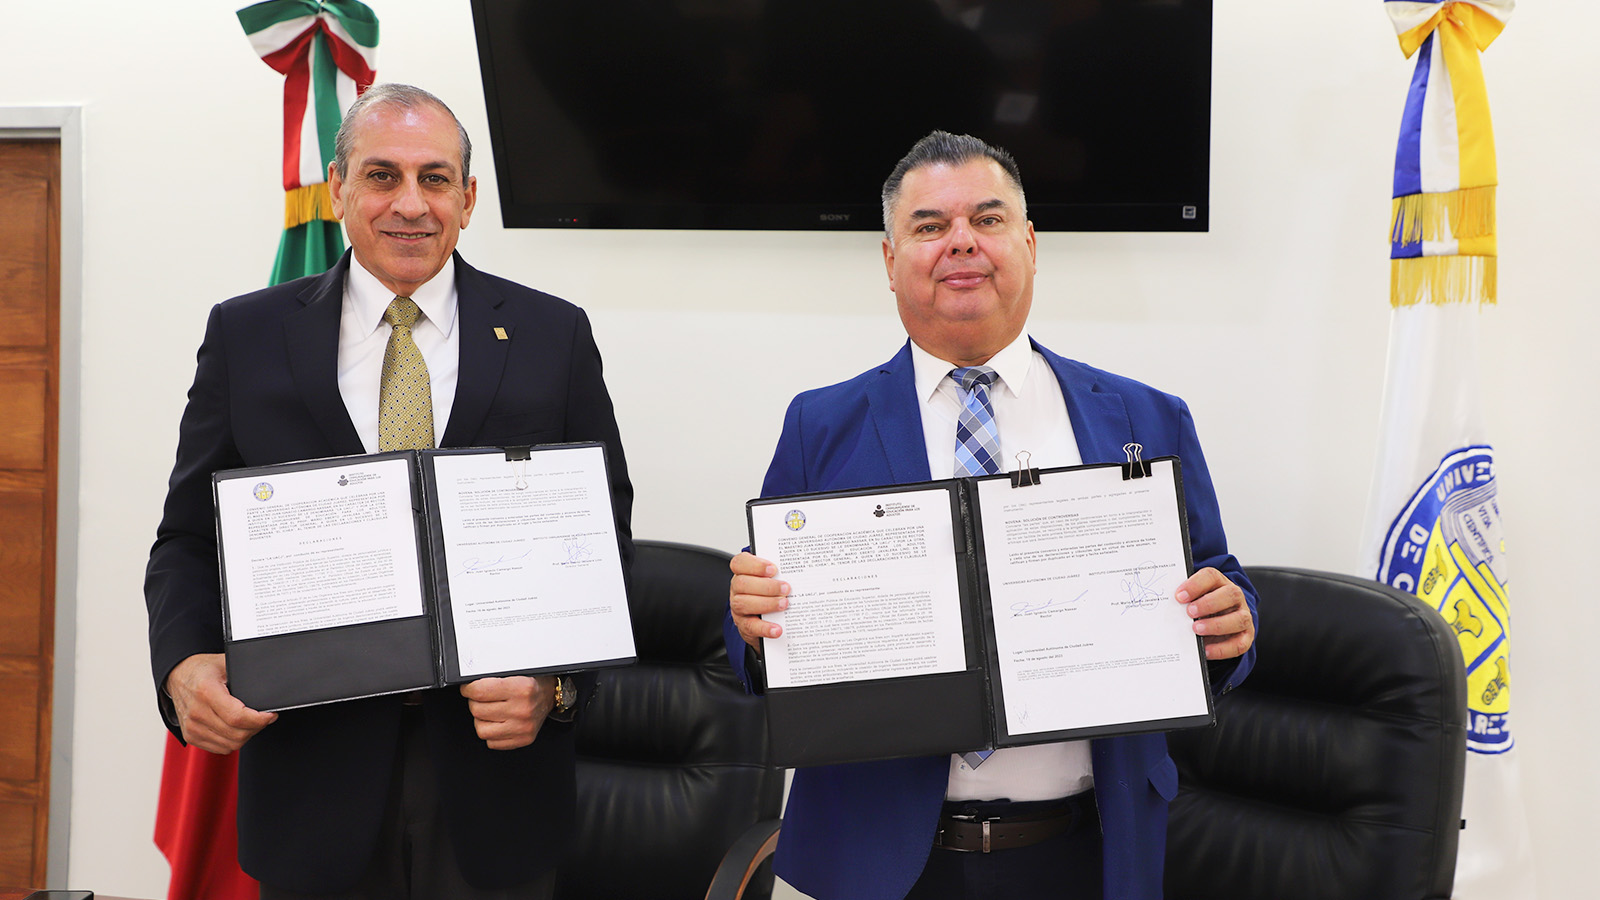 Ratifican compromiso educativo con firma de convenio entre UACJ y el ICHEA